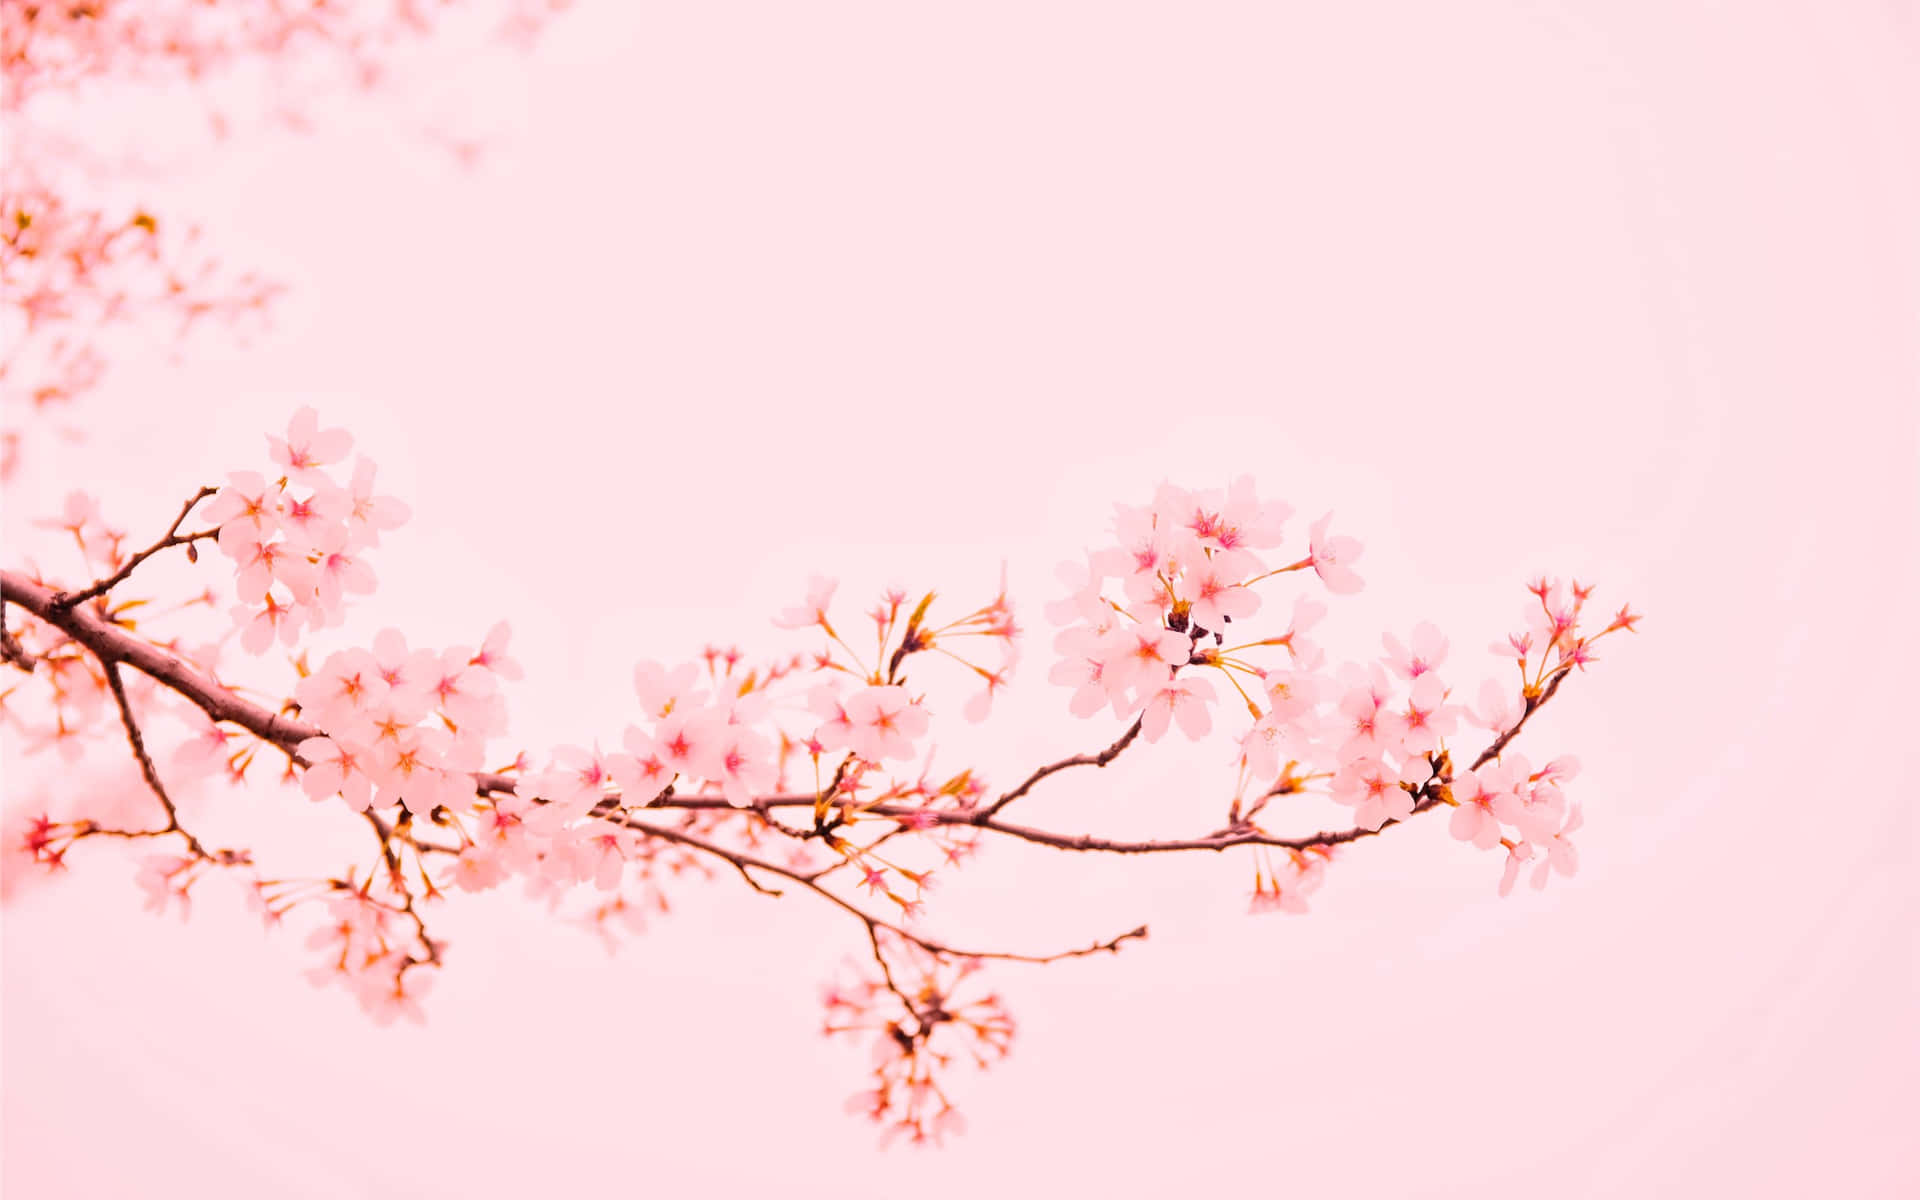 Aesthetic Cherry Blossom Background Wallpaper